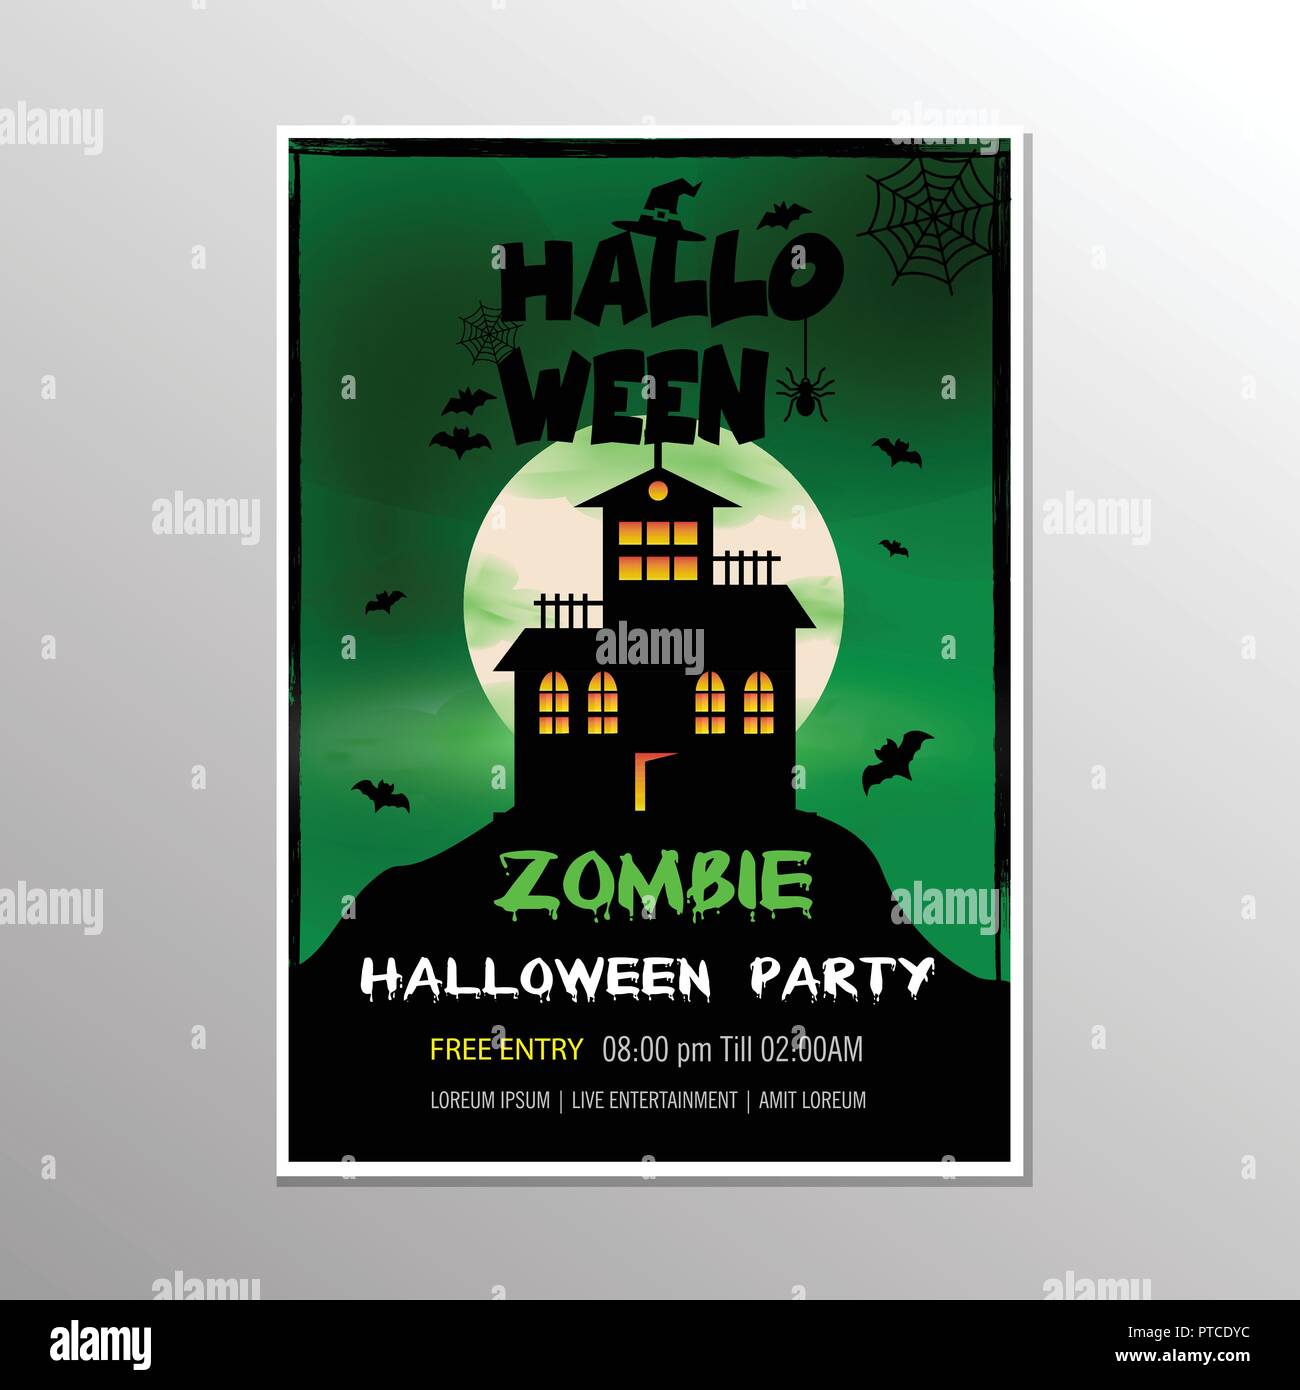 Vector Illustration auf eine Halloween Zombie Partei Thema auf grünem Hintergrund. EPS 10 Abbildung Stock Vektor